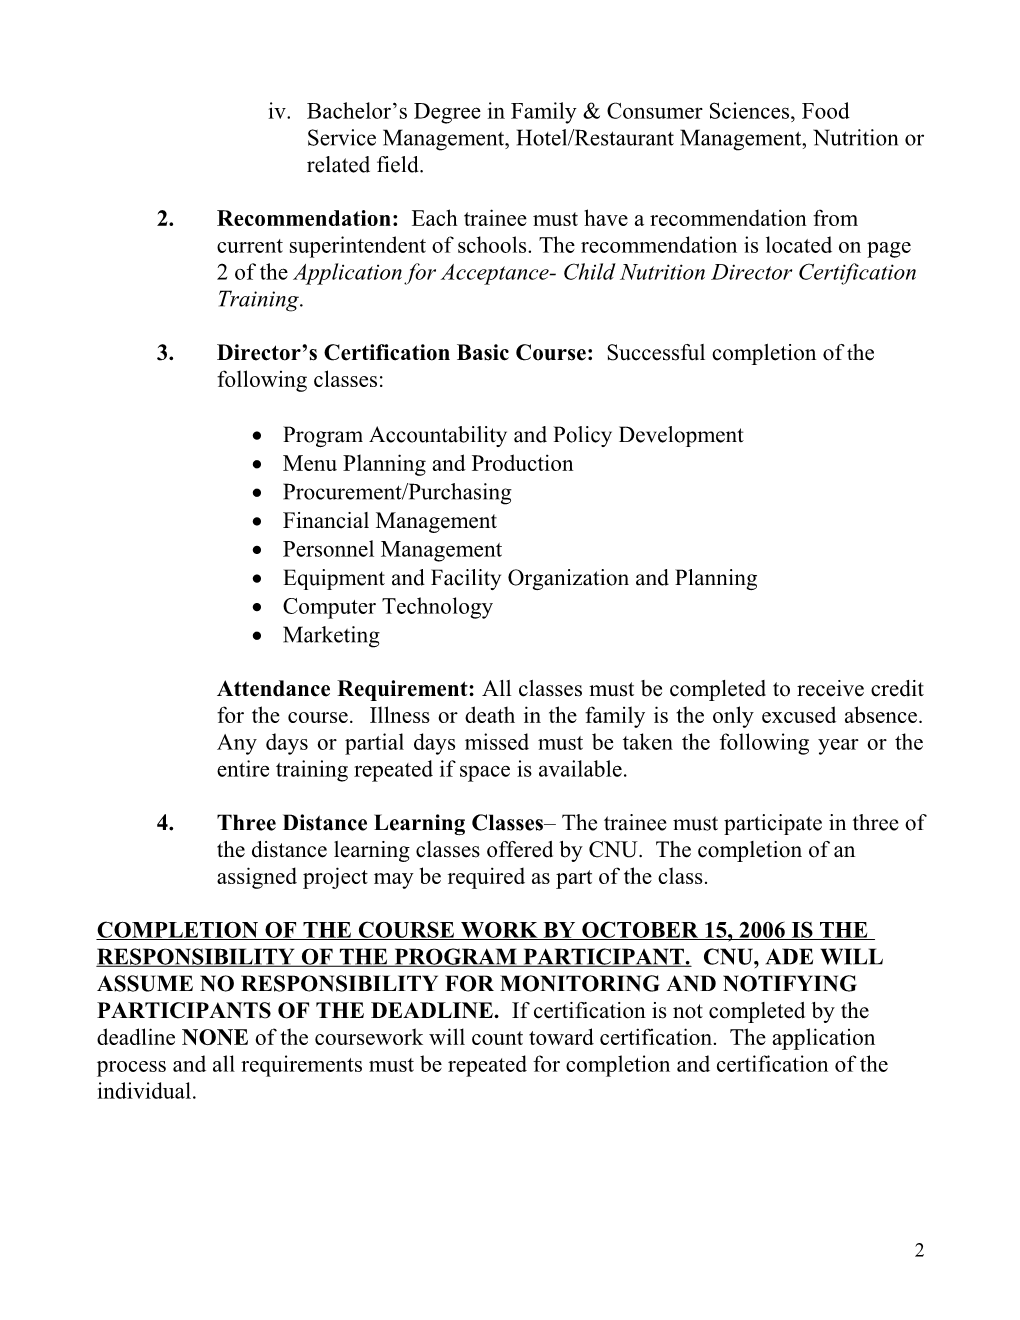 Director Certification Program Requirements